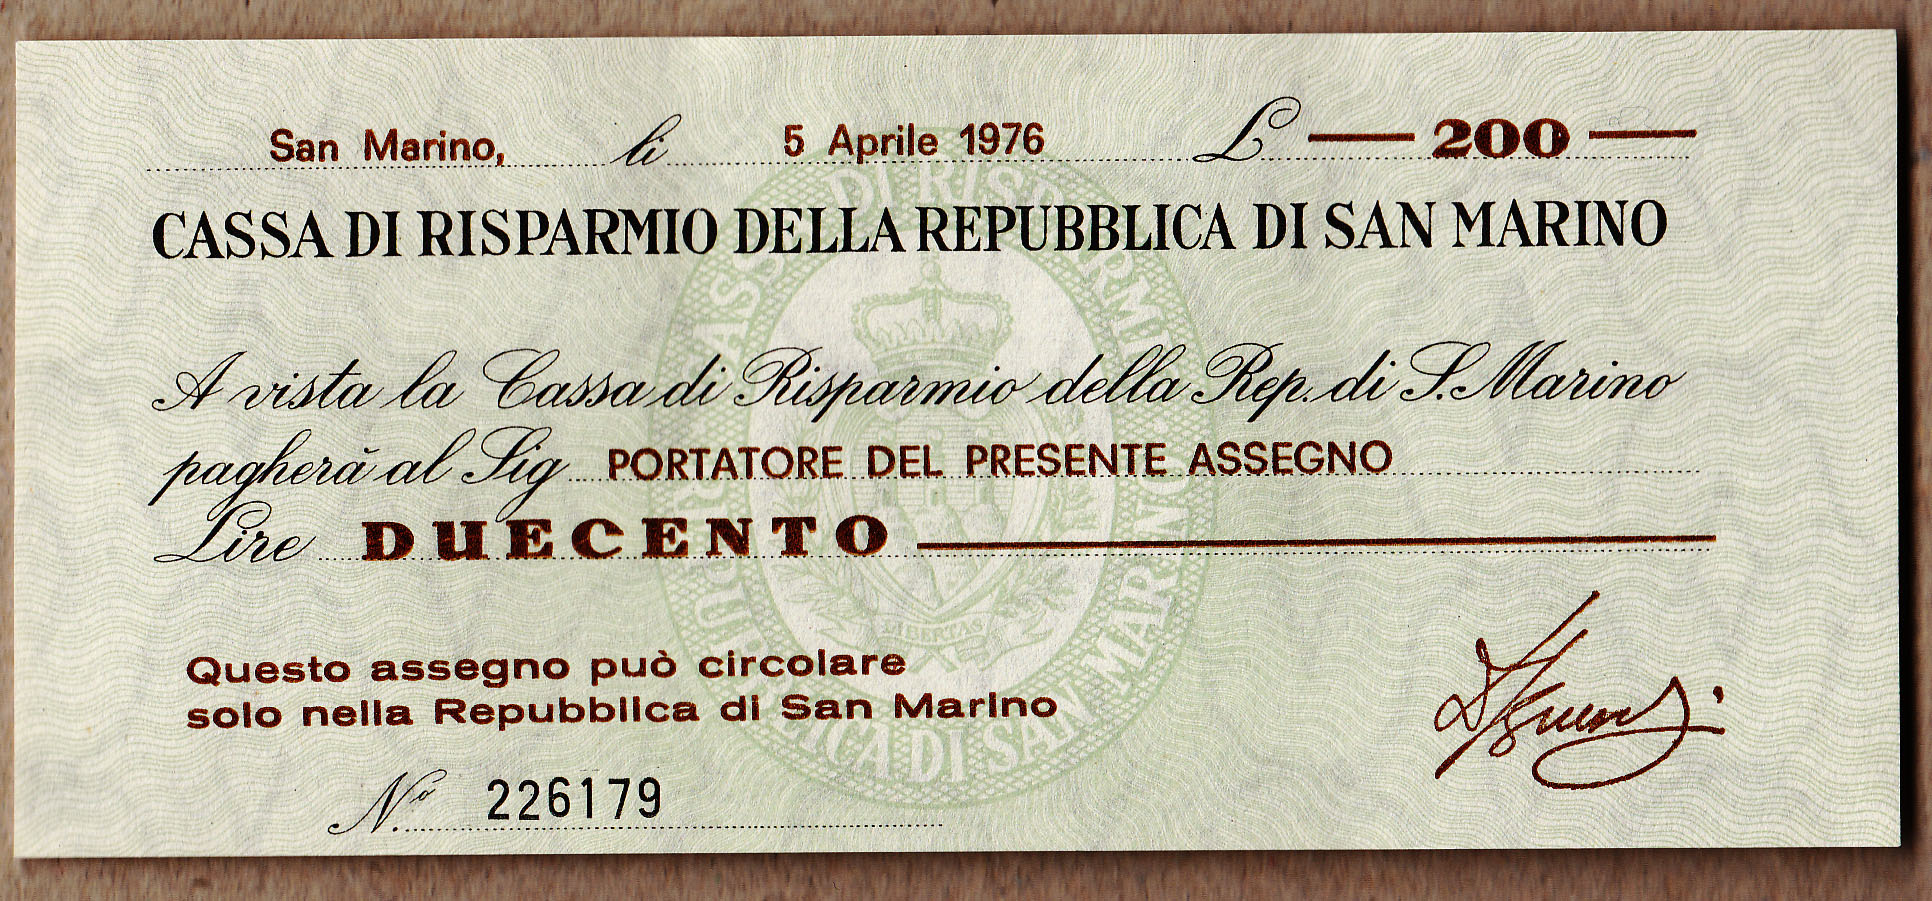 Lire 200 Banconota 5 Aprile 1976 Fior Di Stampa